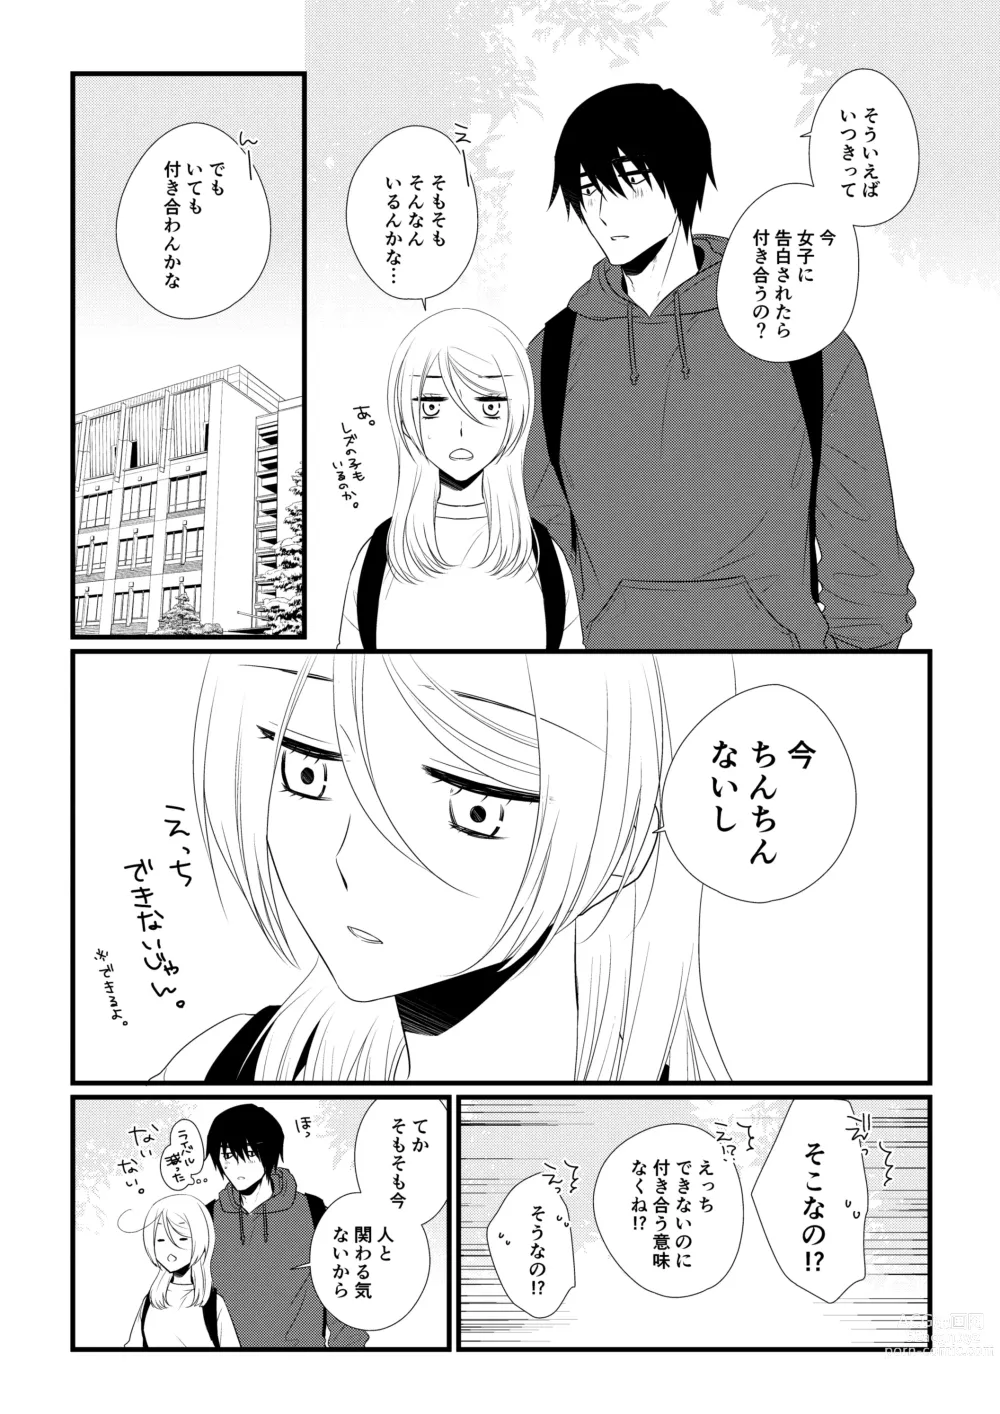 Page 3 of doujinshi Itsuki to Yuusei 2